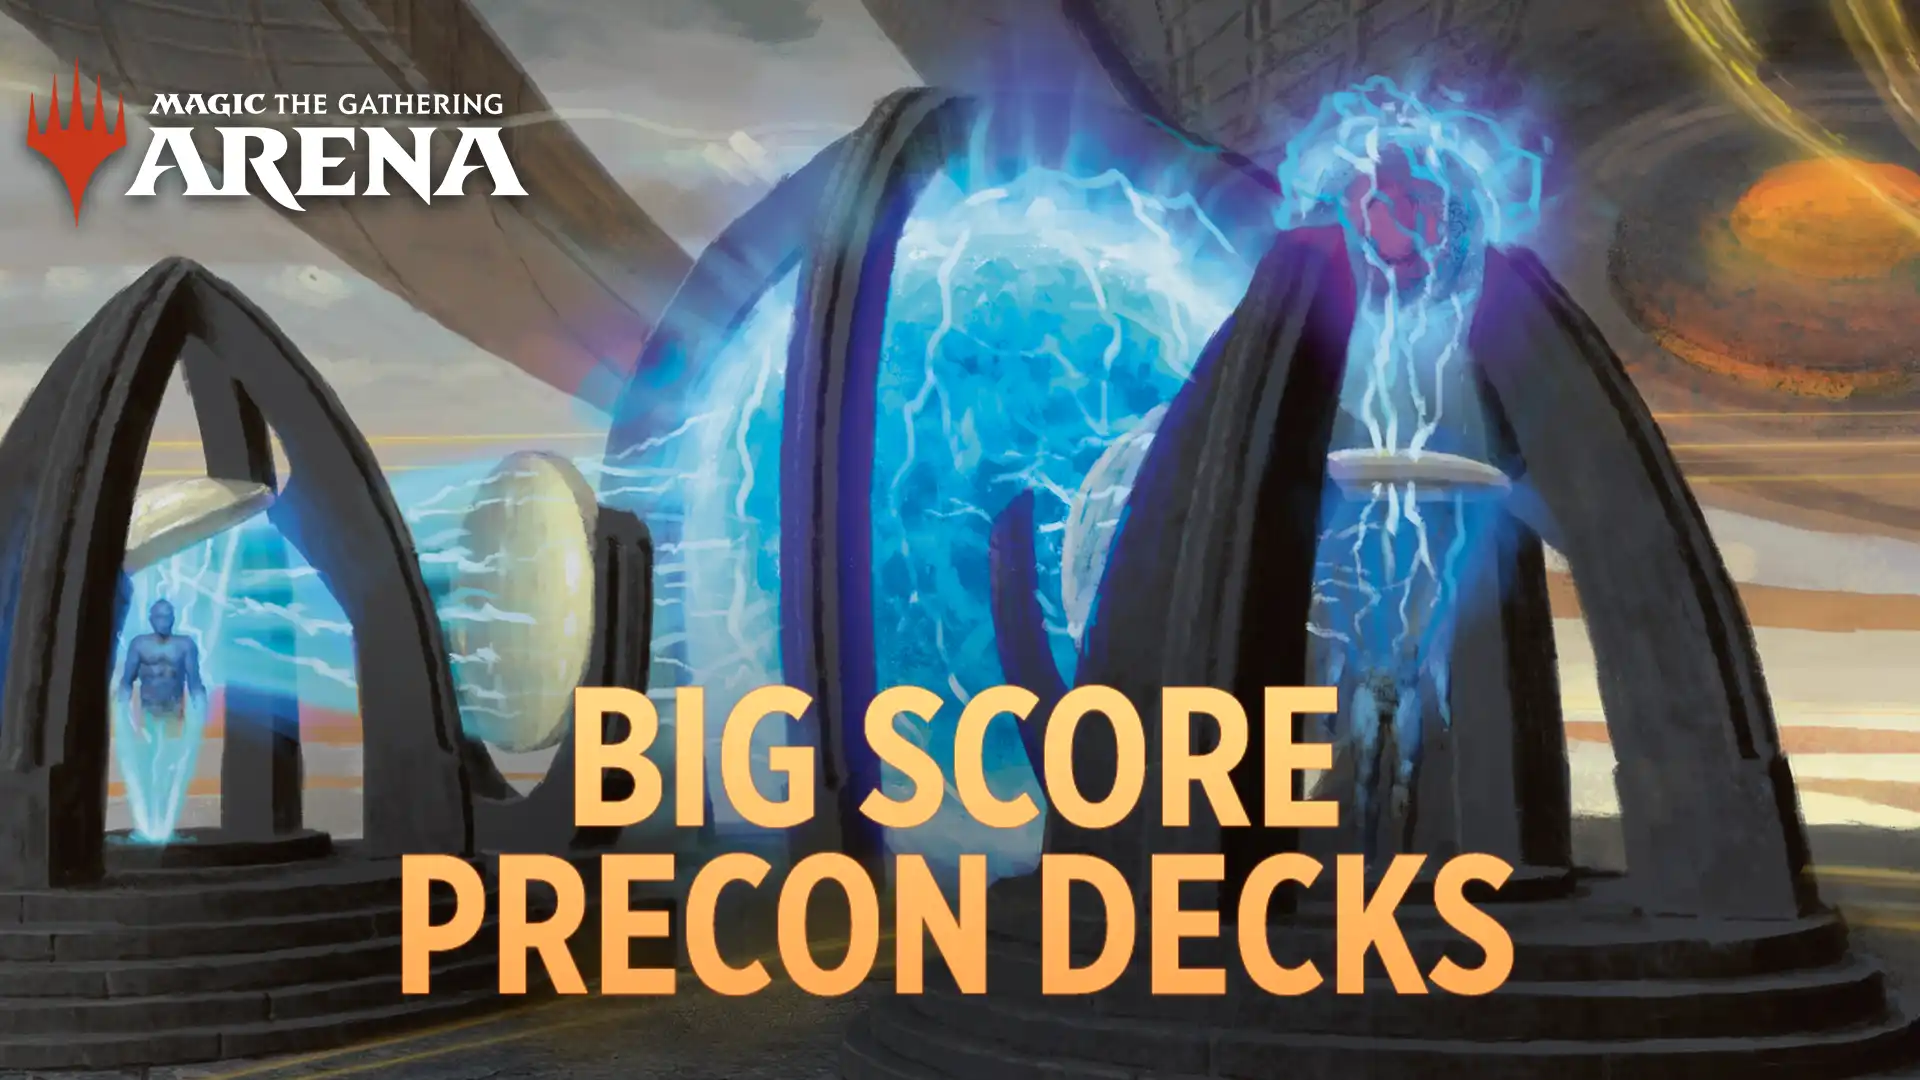 The Big Score Precon Decks